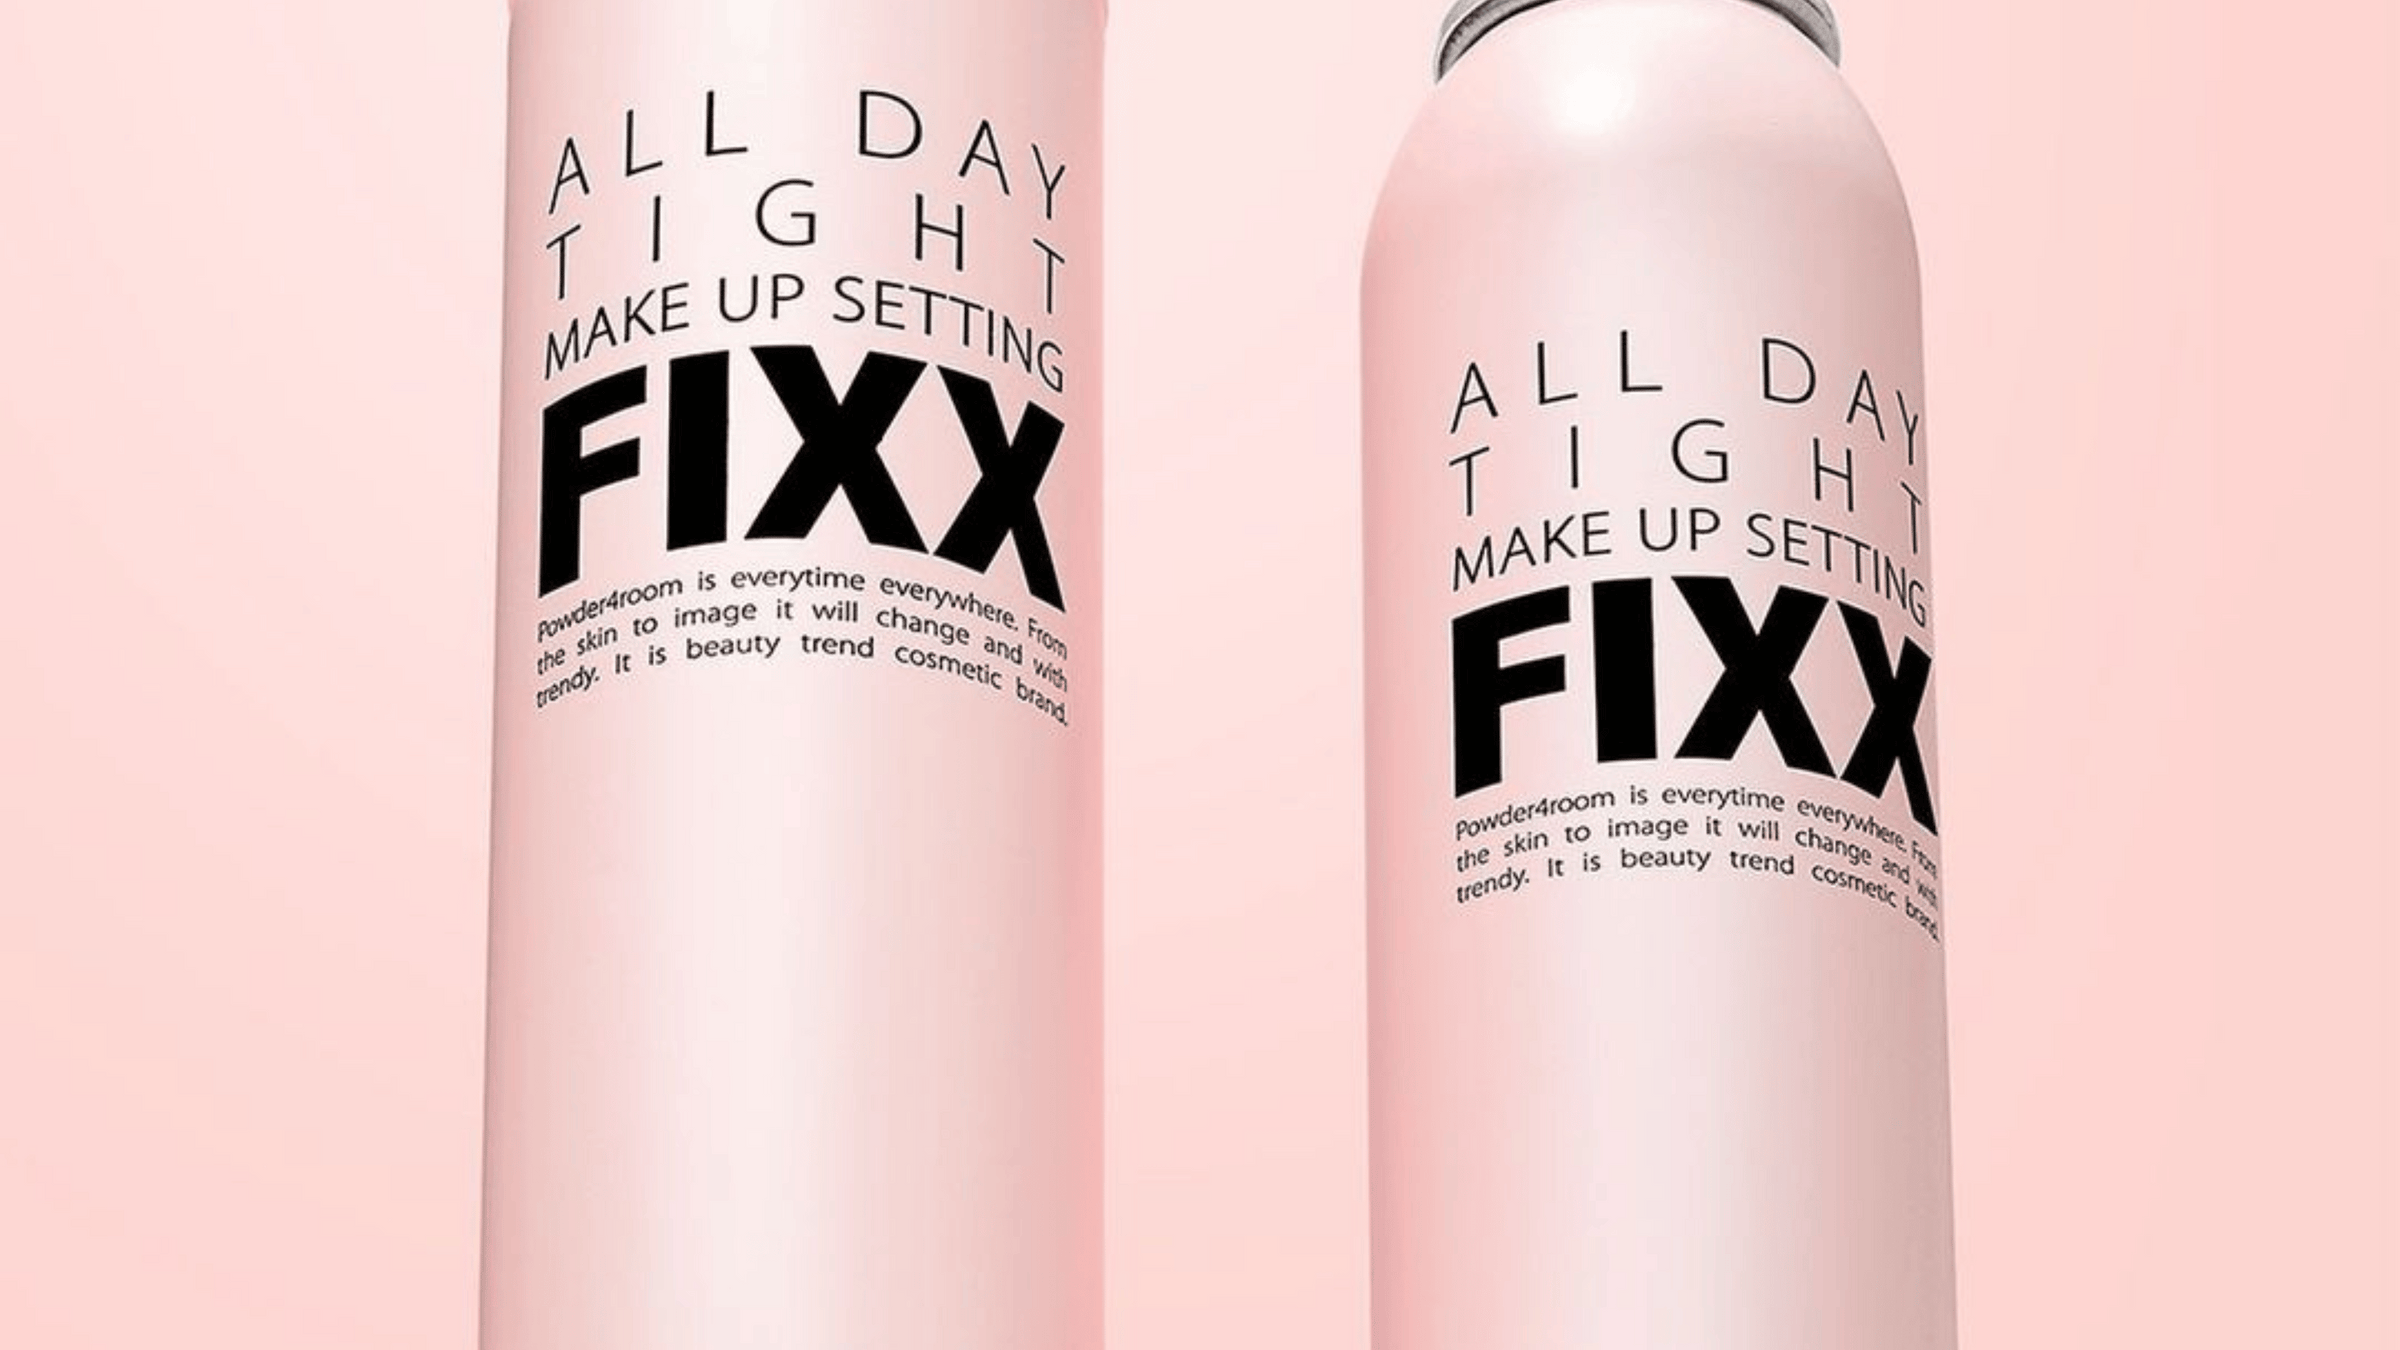 Två rosa flaskor av So Natural All Day Tight Make Up Setting Fixx-spray, med svart och vit text, framför en matchande rosa bakgrund.